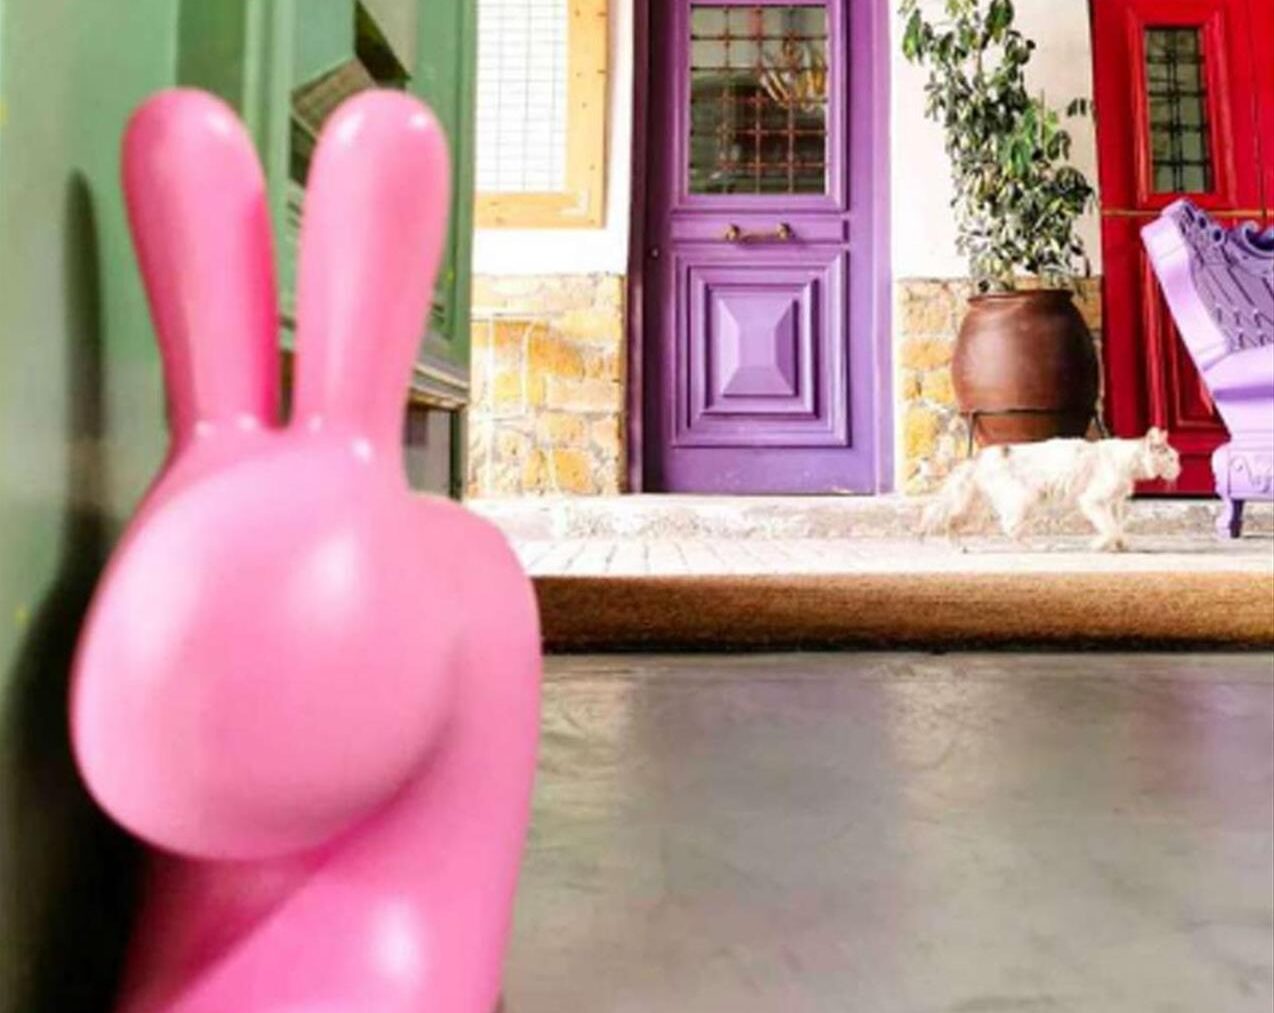 Rabbit-XS-Doorstopper-Bright-Pink